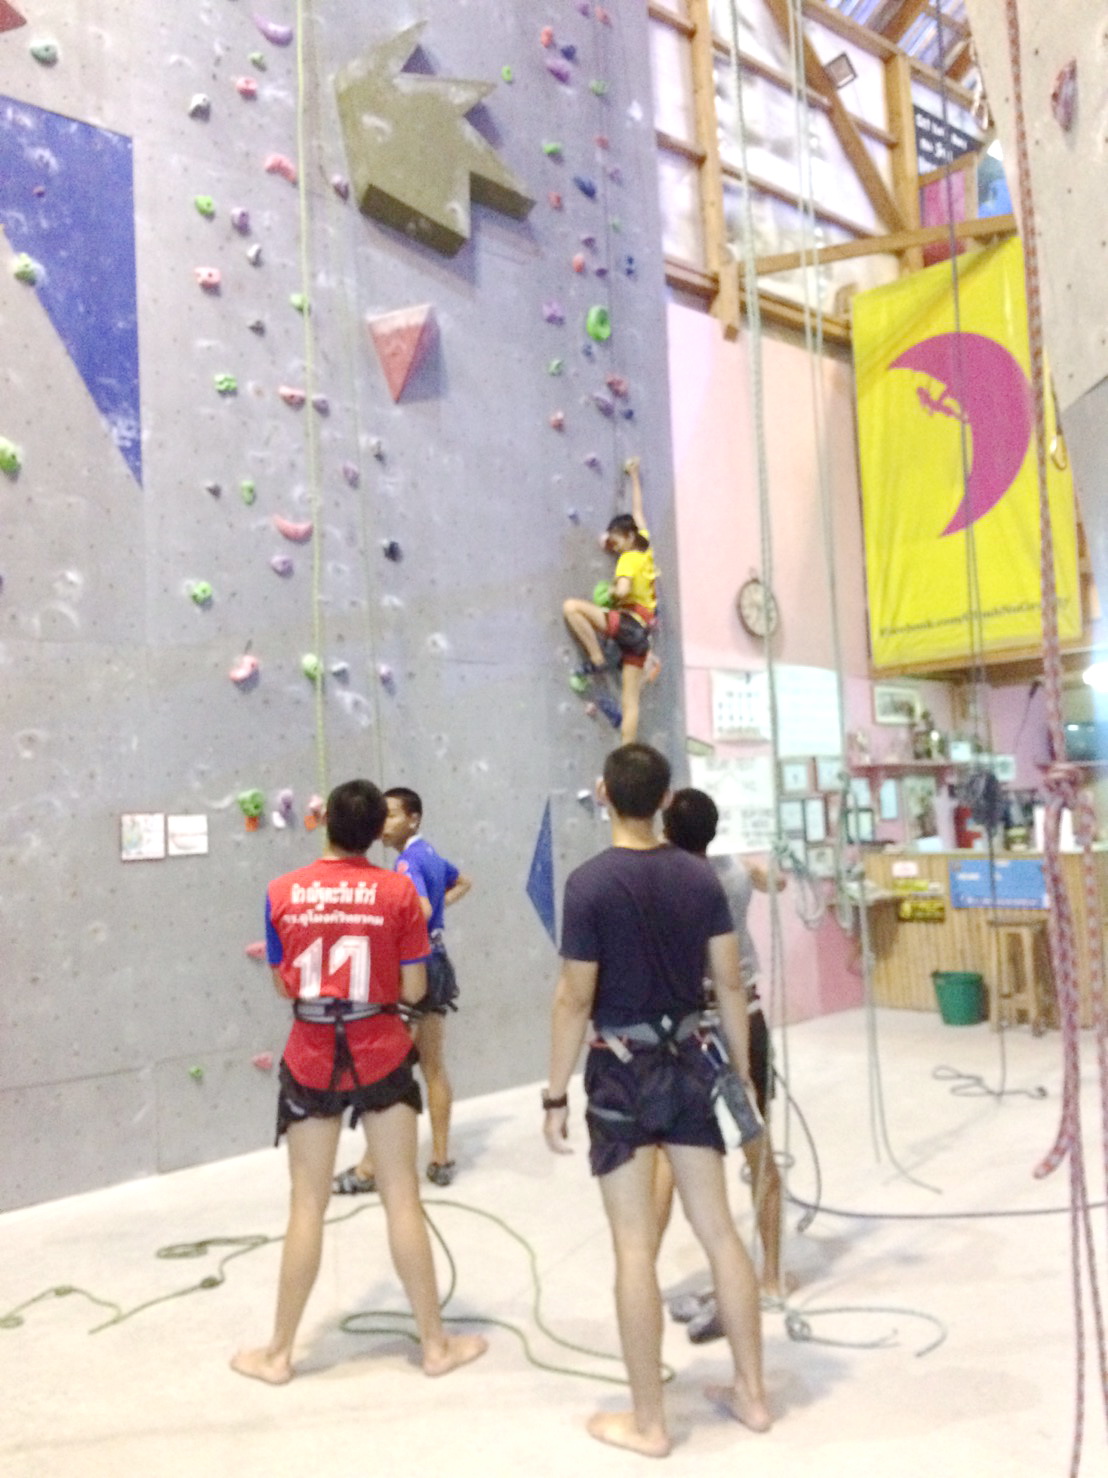 ซ้อมหนัก…ทีมนักกีฬาปีนหน้าผาจำลอง - Chiang Mai News